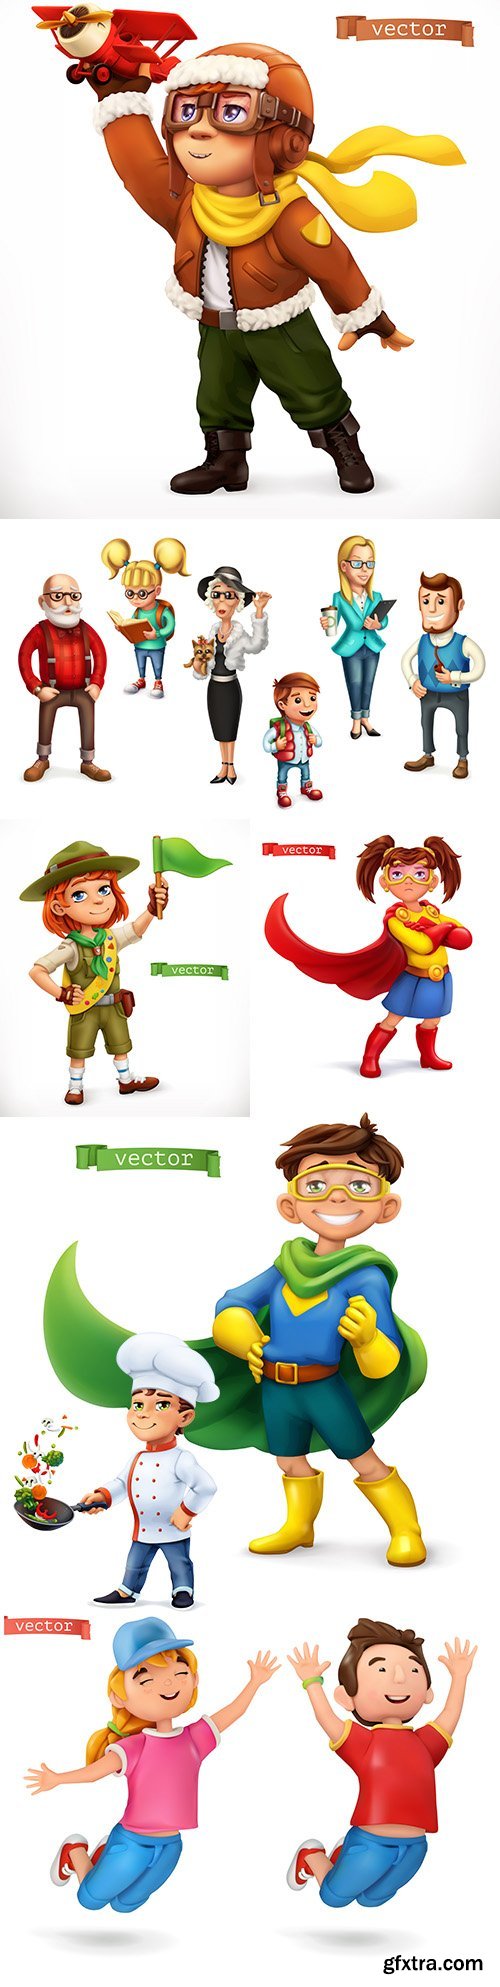 Little children in superhero character costume illustration